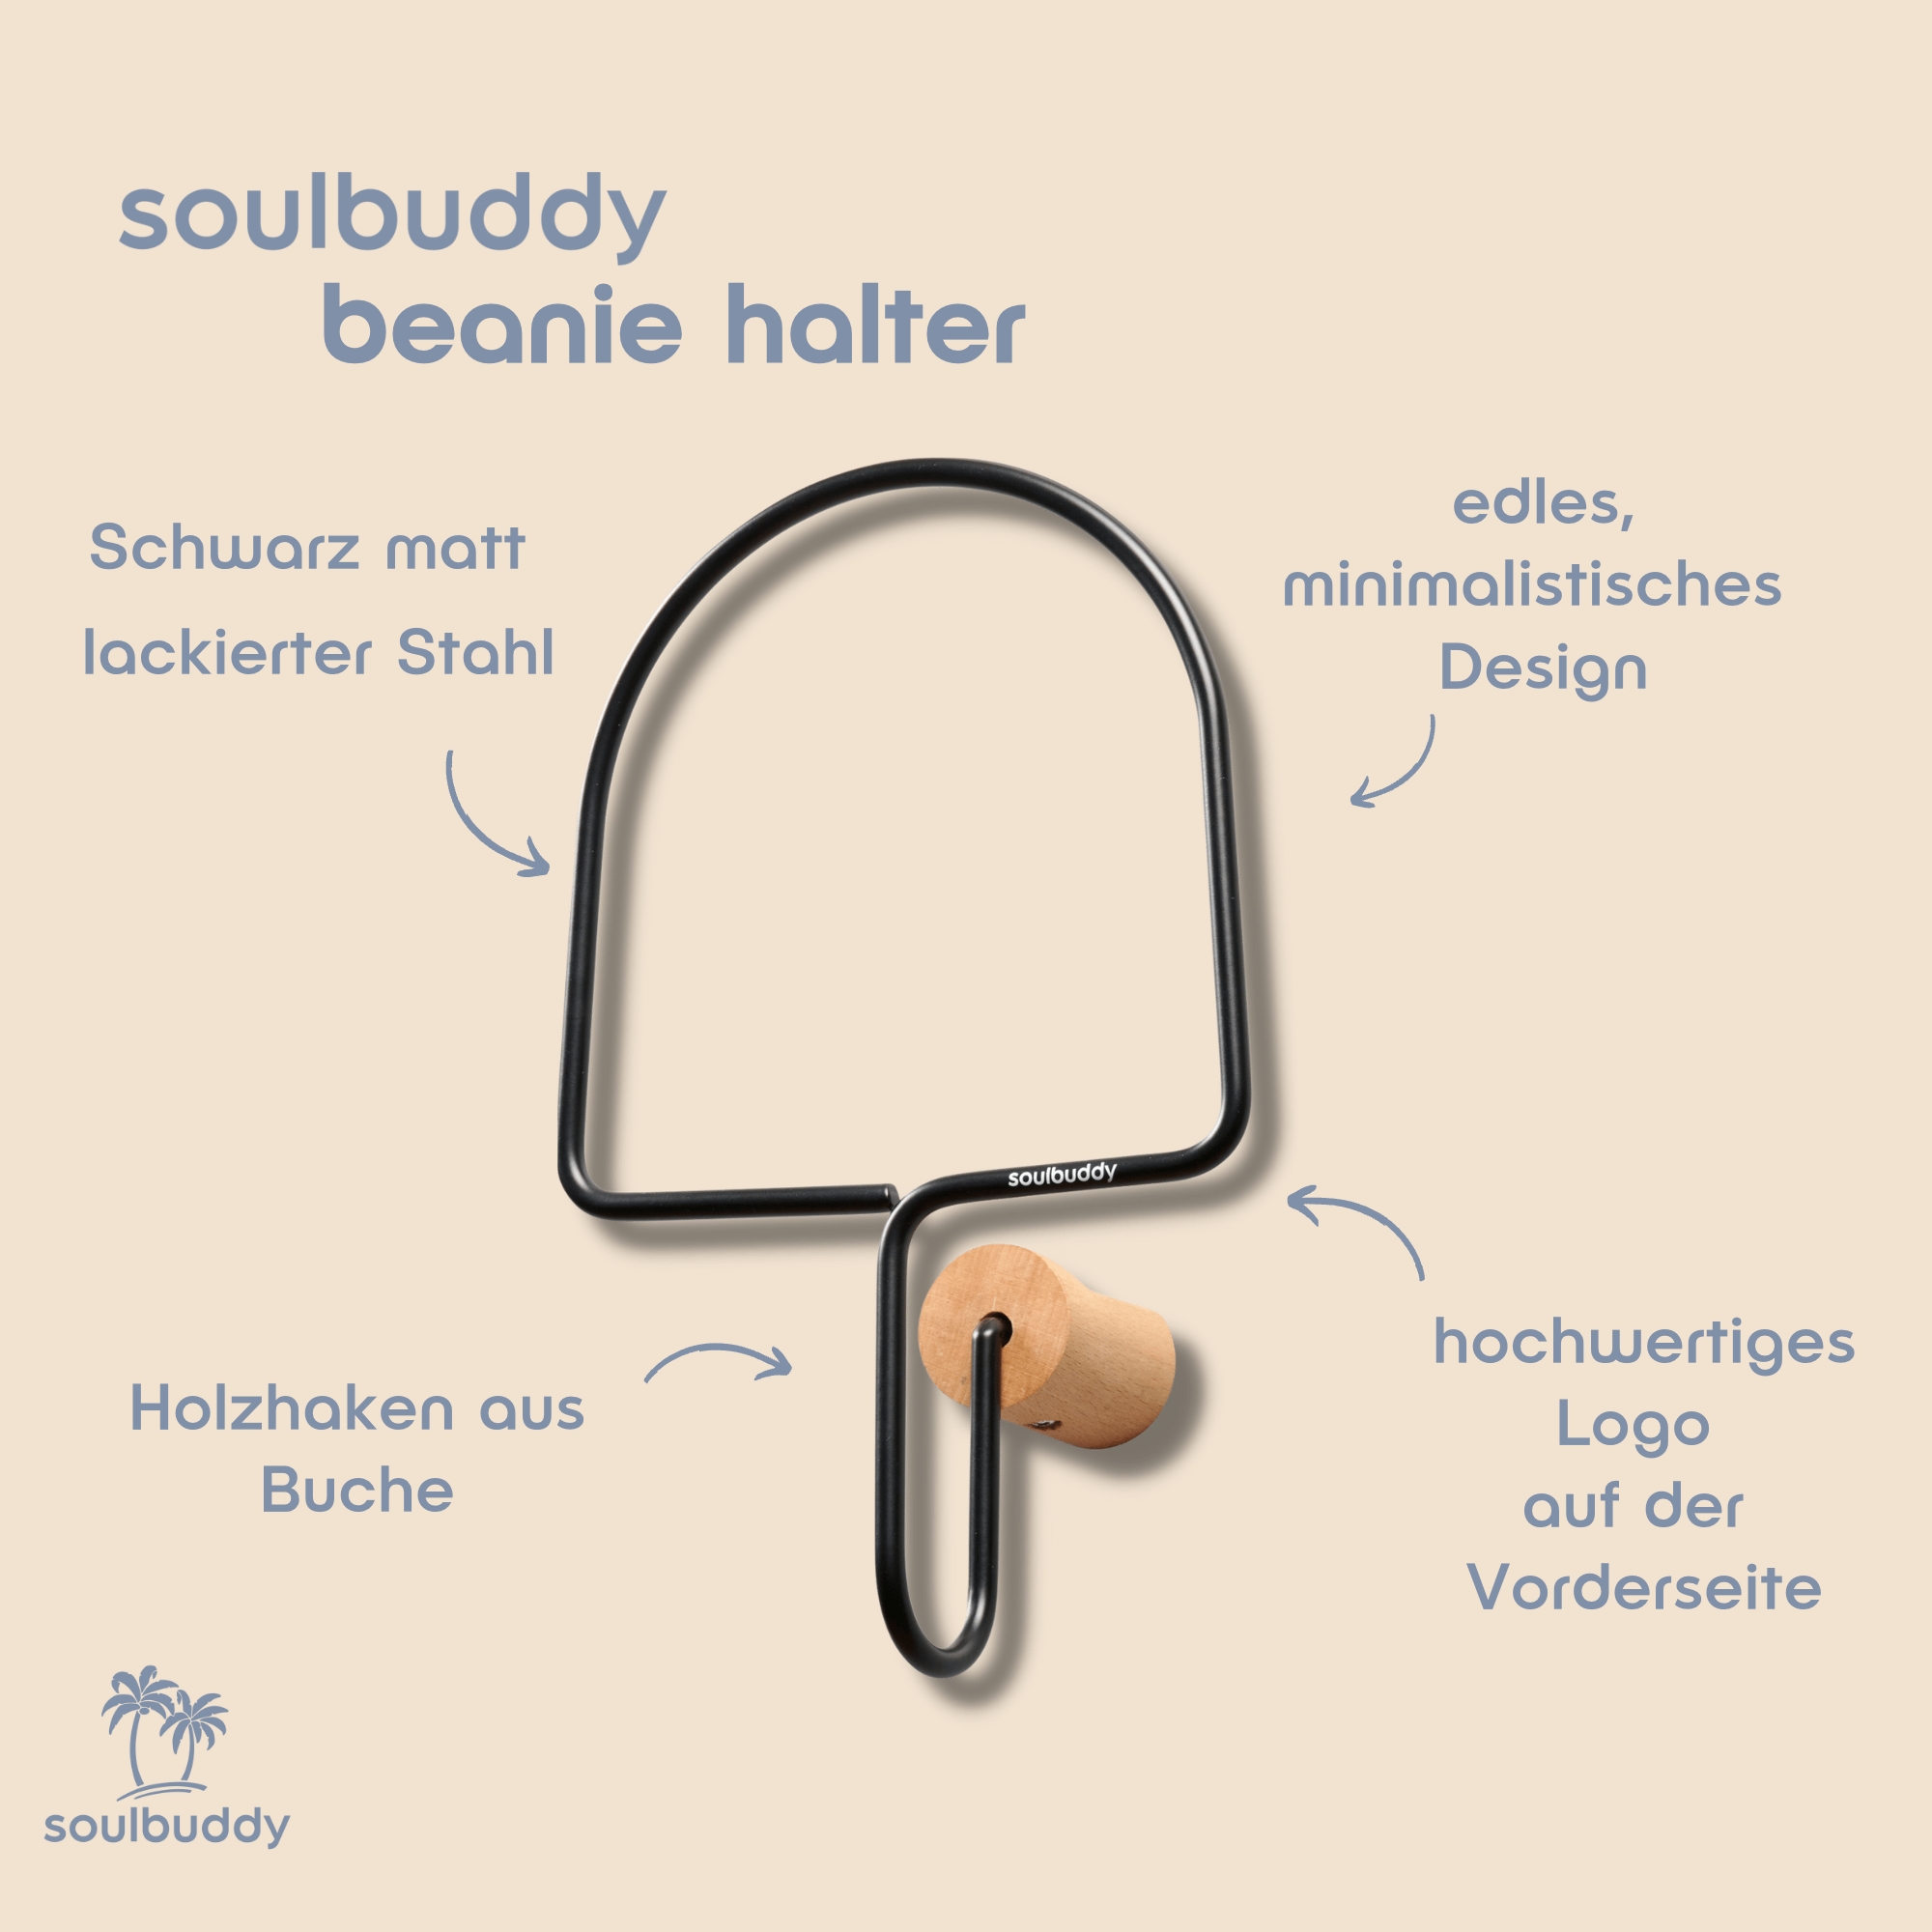 Soulbuddy Beanie Halter mit Detailbeschreibung